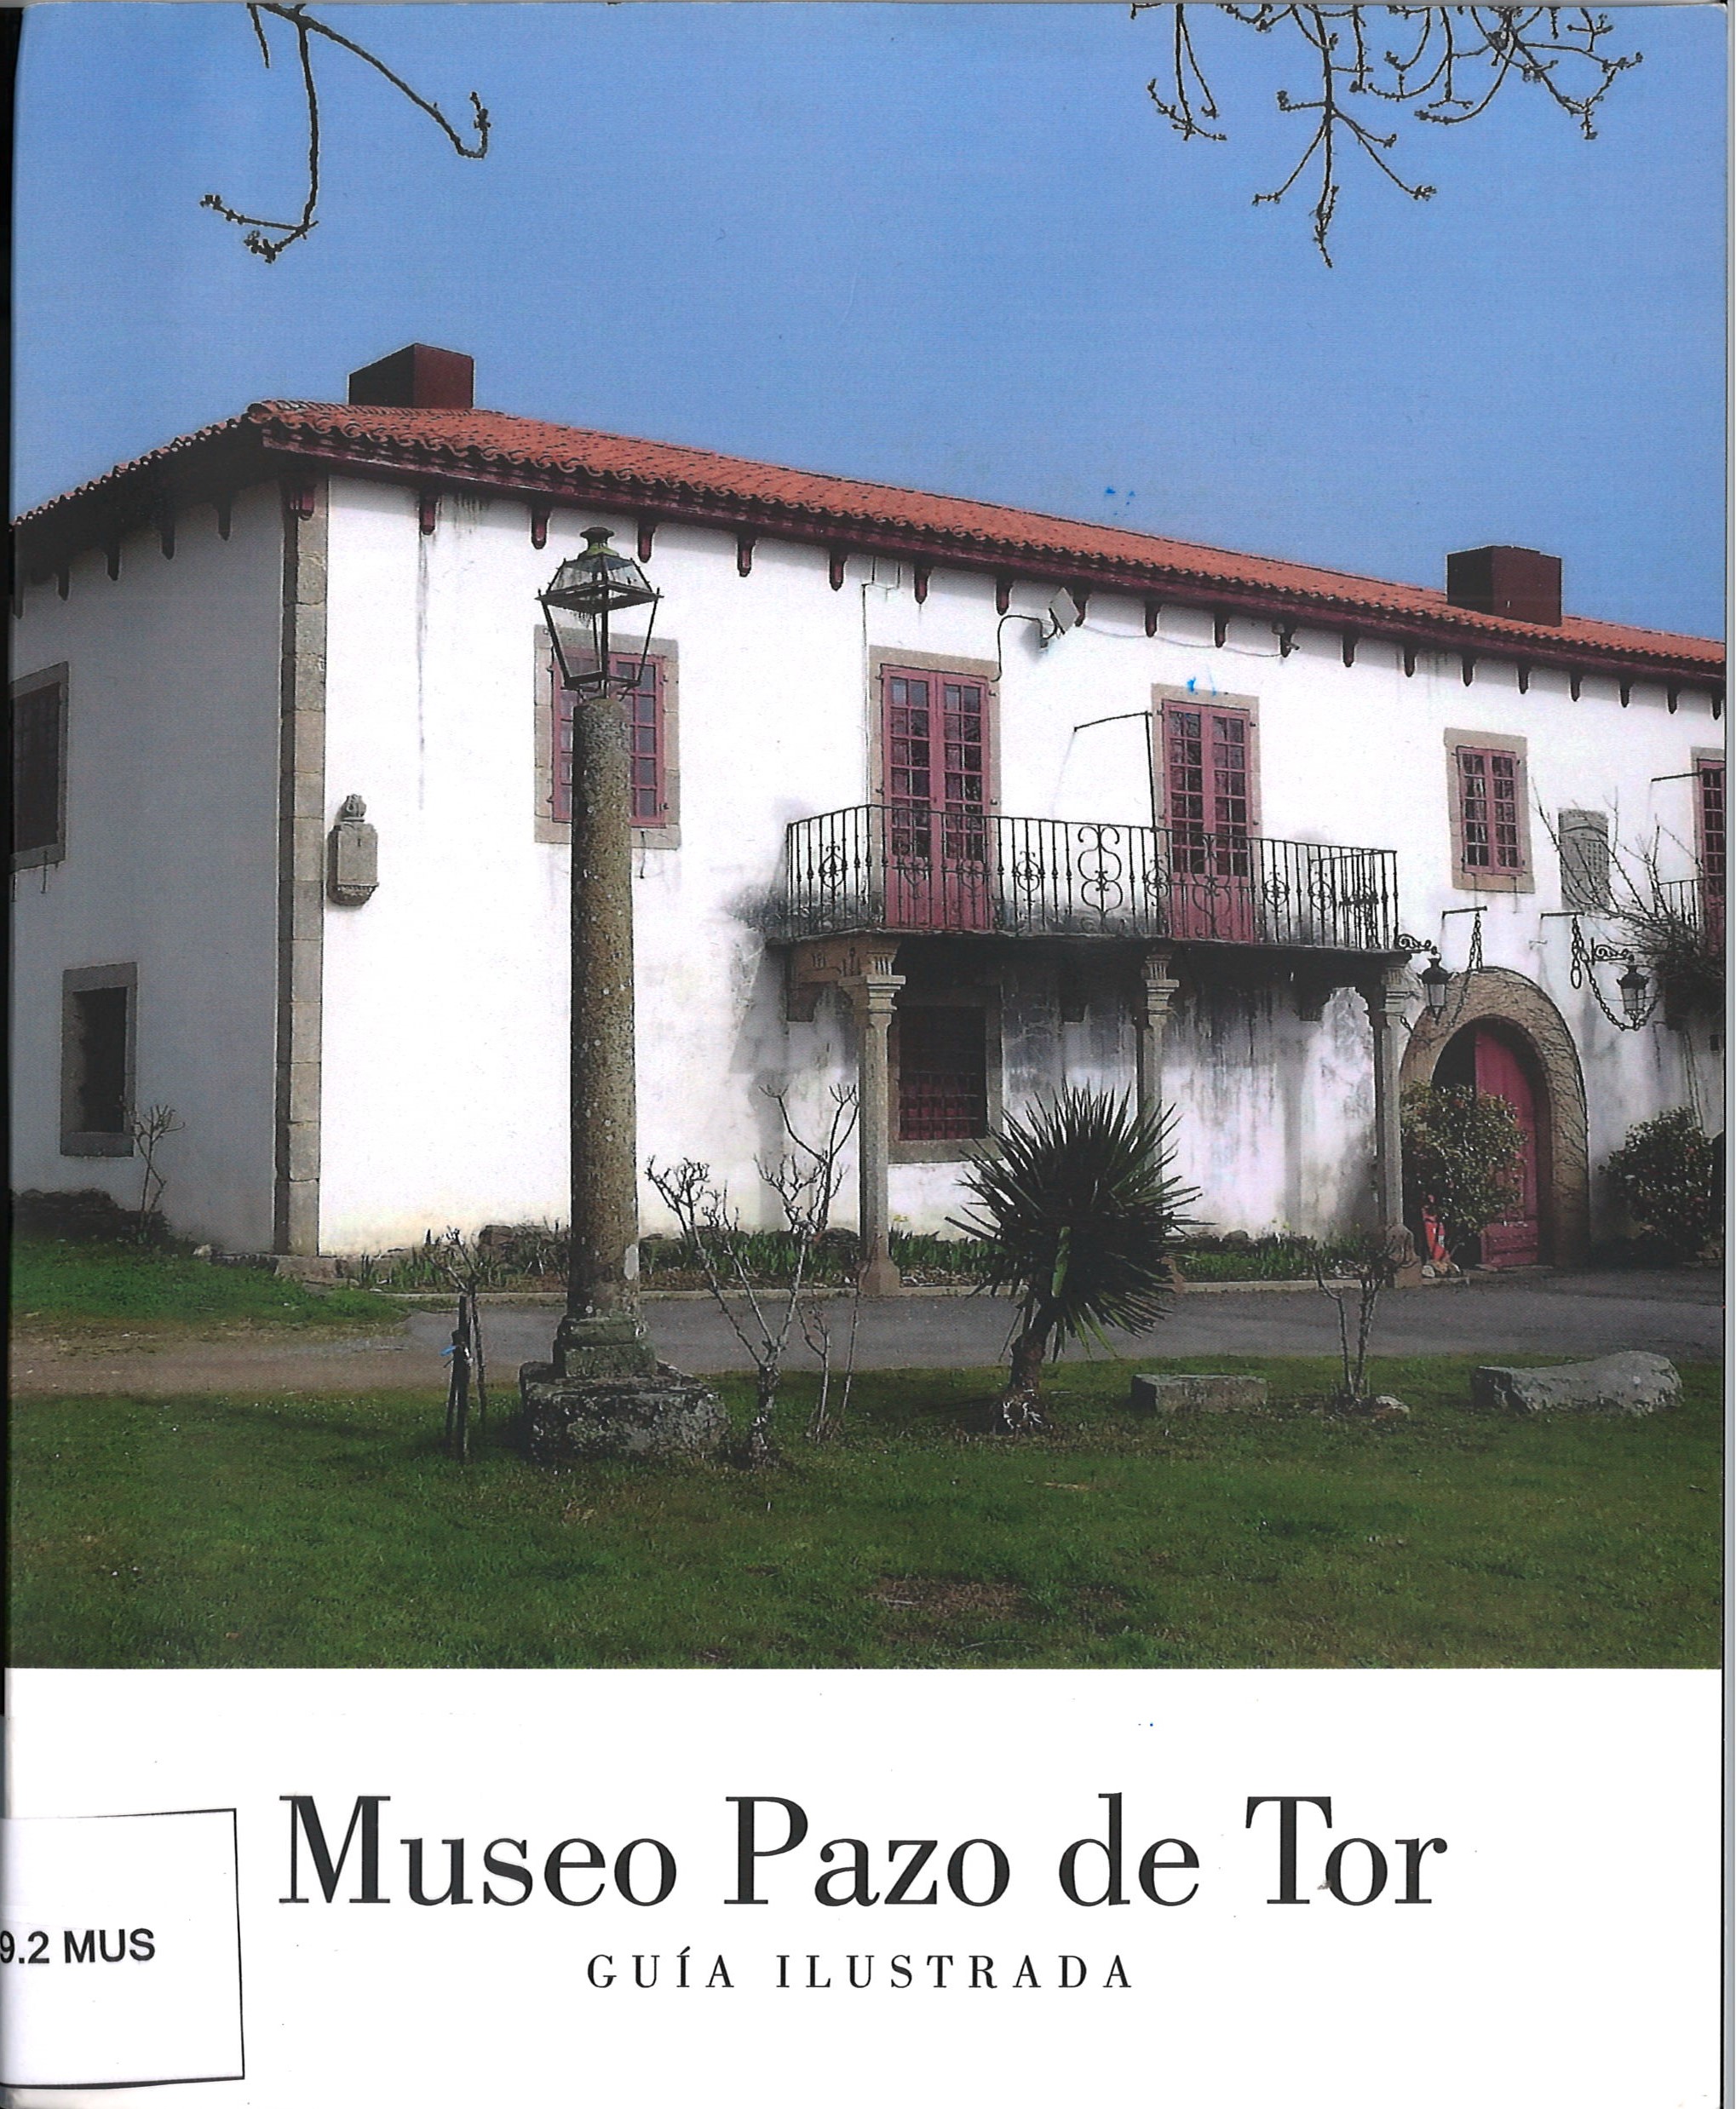 Museo Pazo de Tor. Guía Ilustrada-Fernando Arribas Arias y Antonio Reigosa Carreiras-image